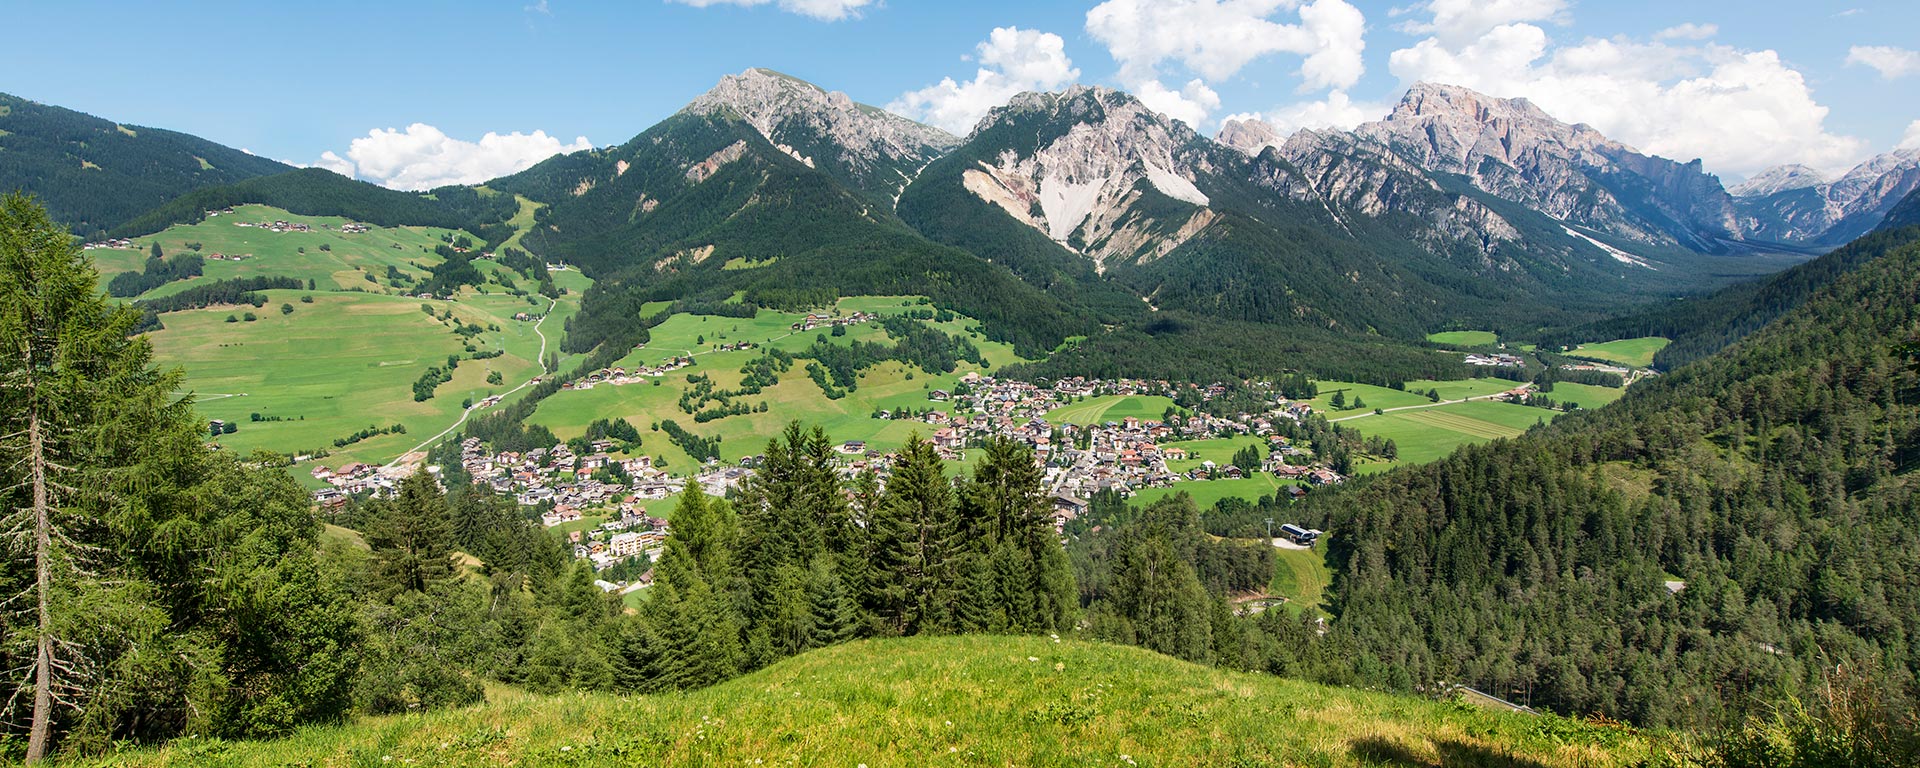 Der Ort St. Vigil in den Dolomiten von oben an einem sonnigen Sommertag aufgenommen